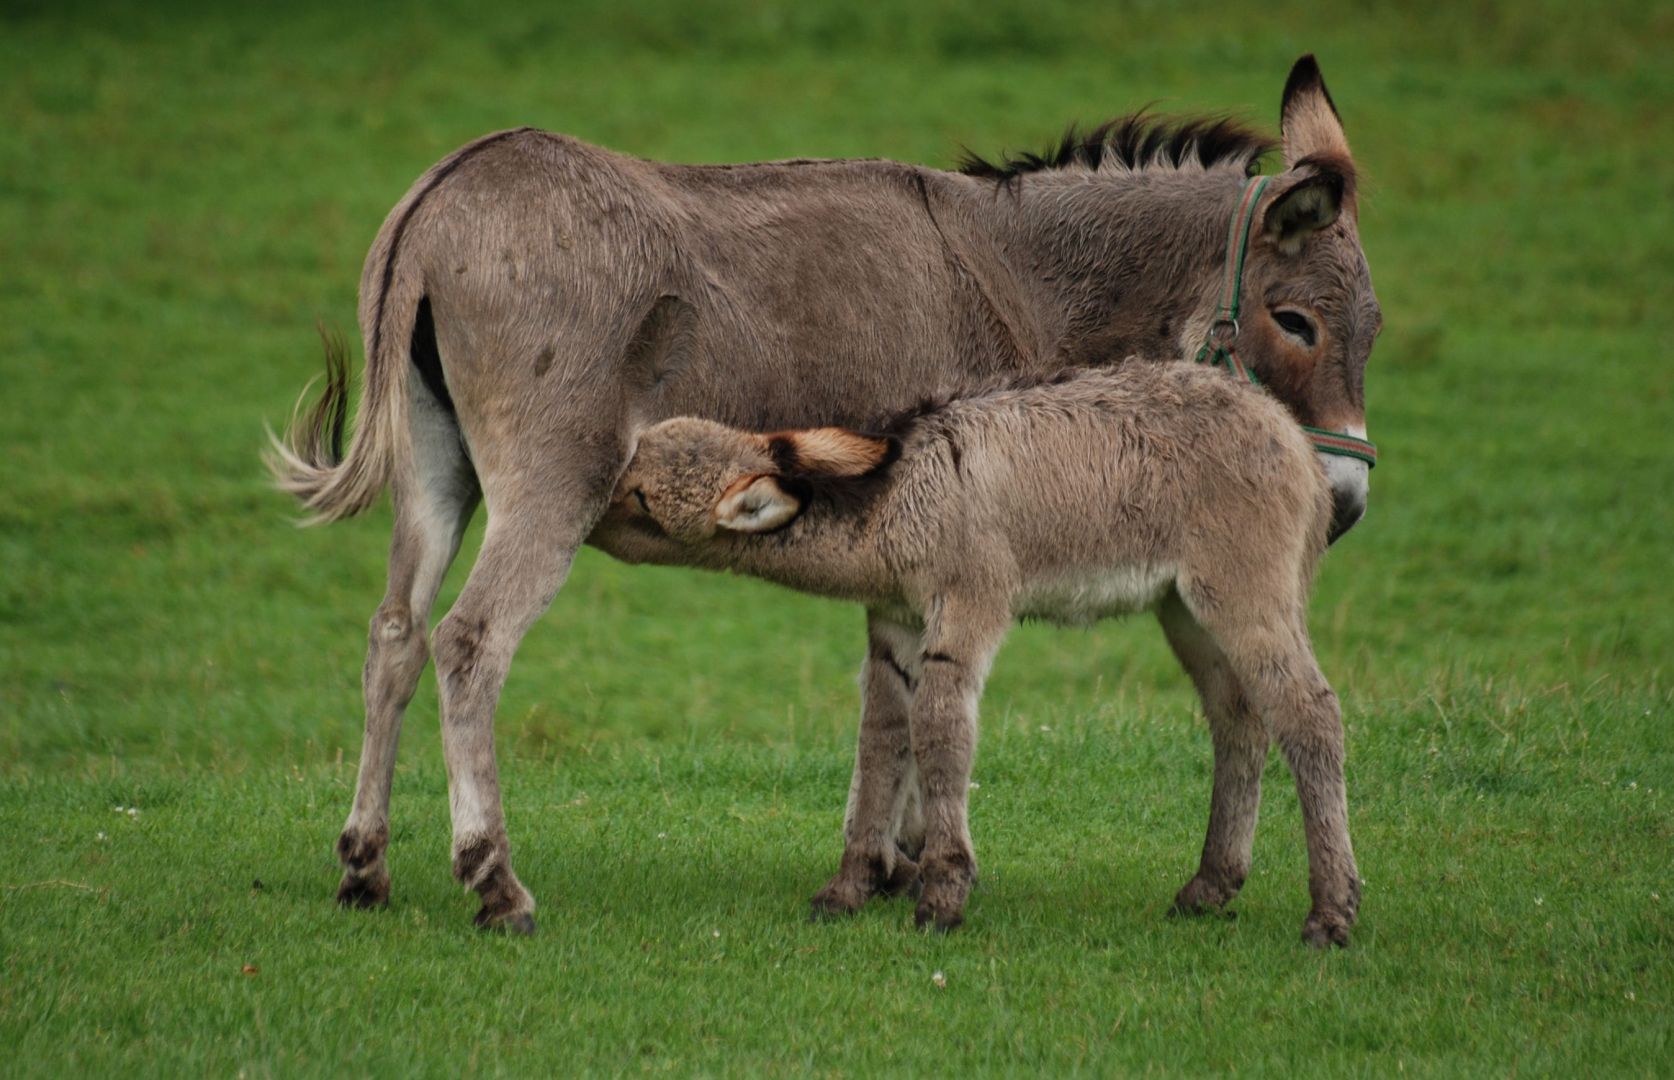 Female donkey nursing cubs